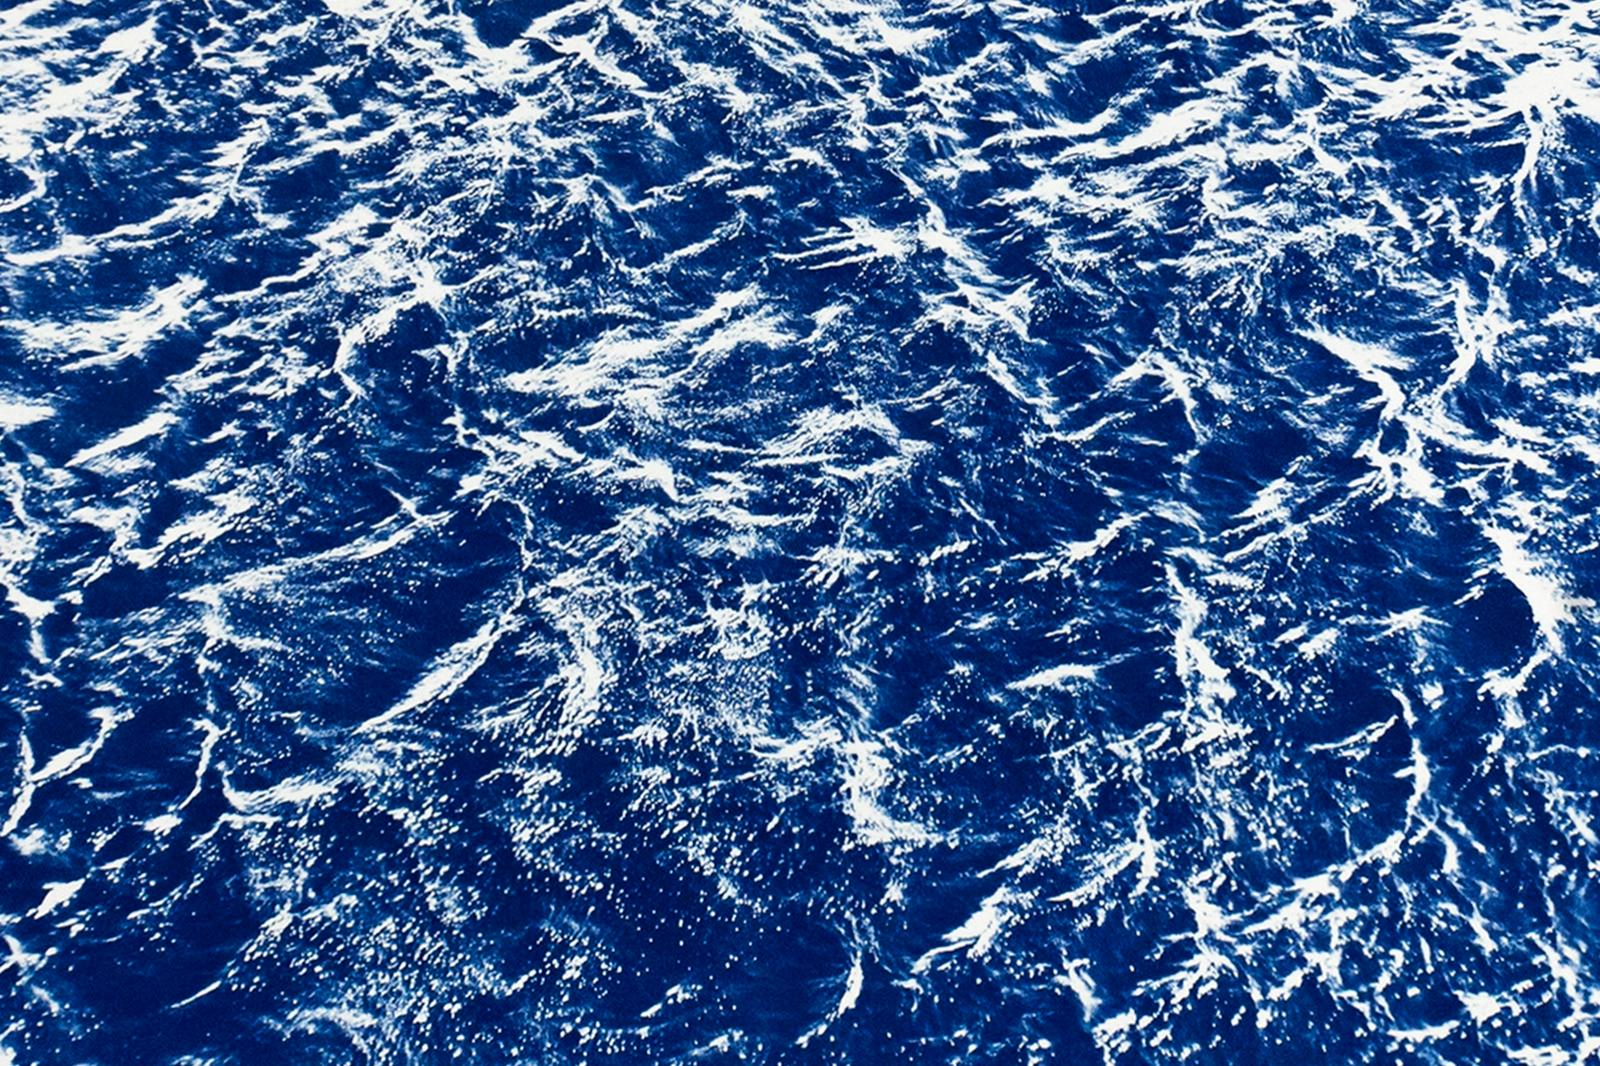 Très grand paysage marin cyanotype représentant des courants d'océan Pacifique, bleu et blanc nautique - Violet Landscape Photograph par Kind of Cyan